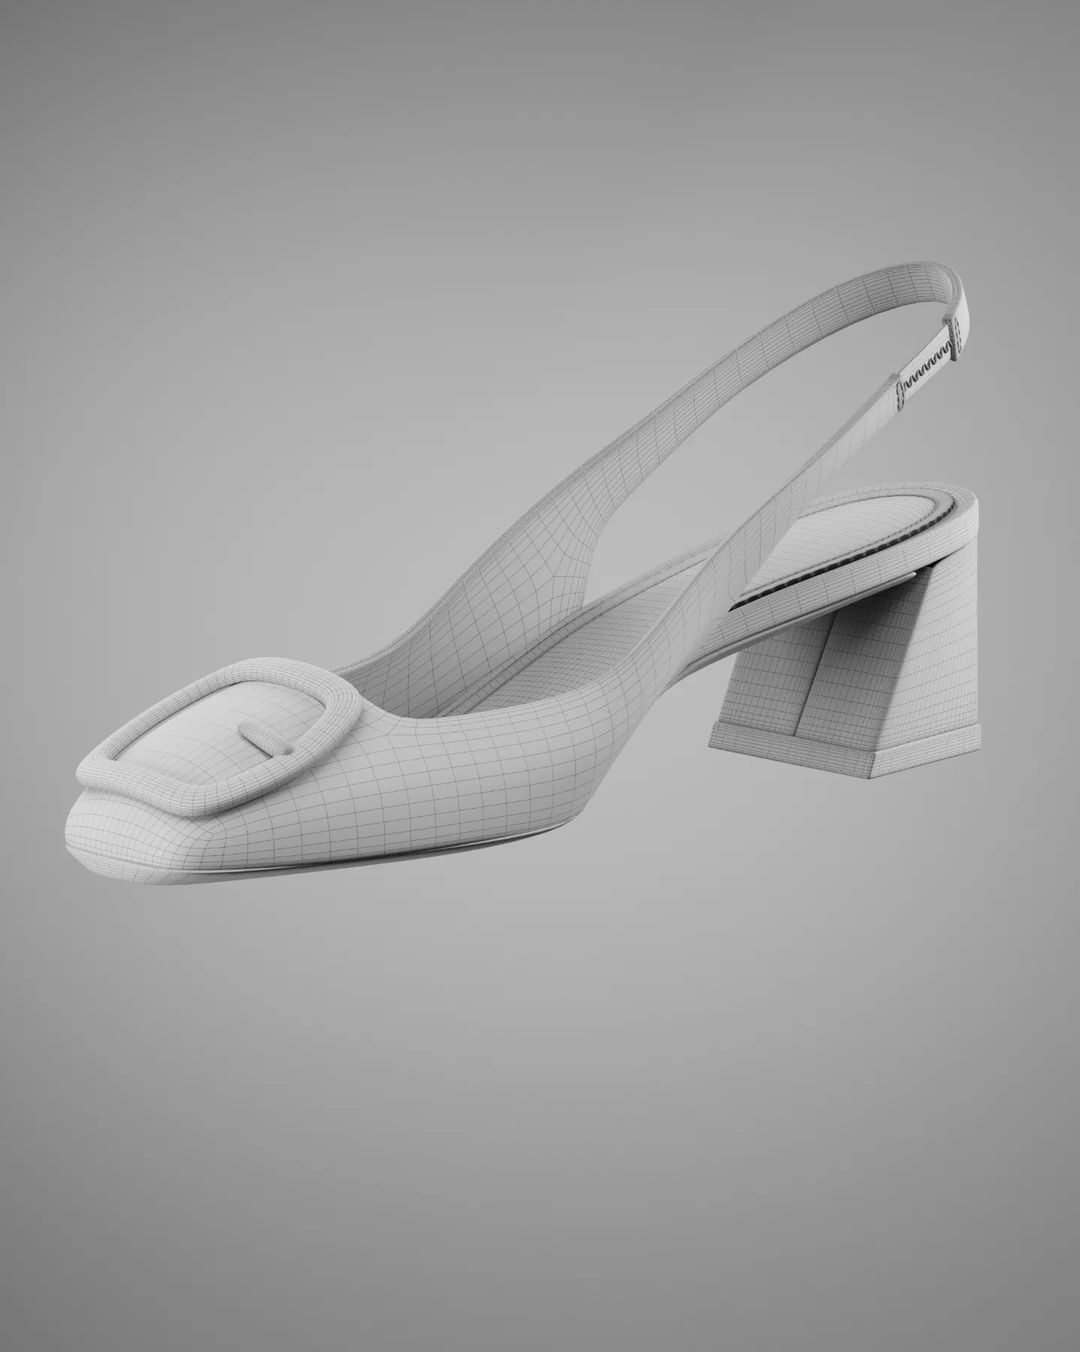 3D Shoe 3d animation 3d product 3D model 3d fashion 3d shoe animation 3d bag animation 3D Animaton 3d Bag 3d heel